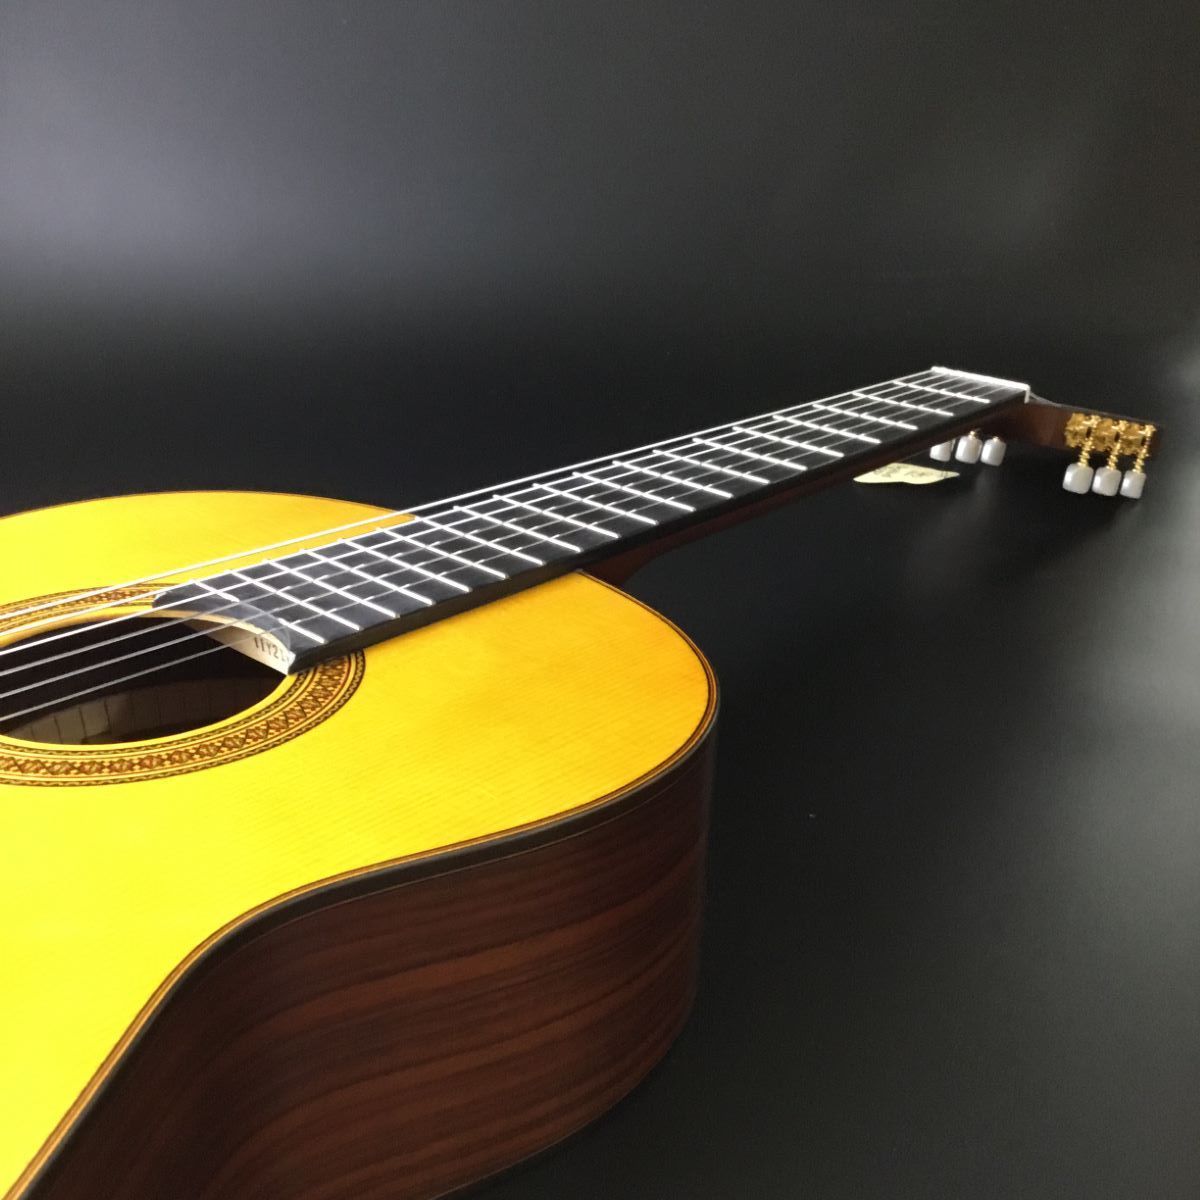 YAMAHA CG182S クラシックギター 650mm ソフトケース付き 表板:松単板